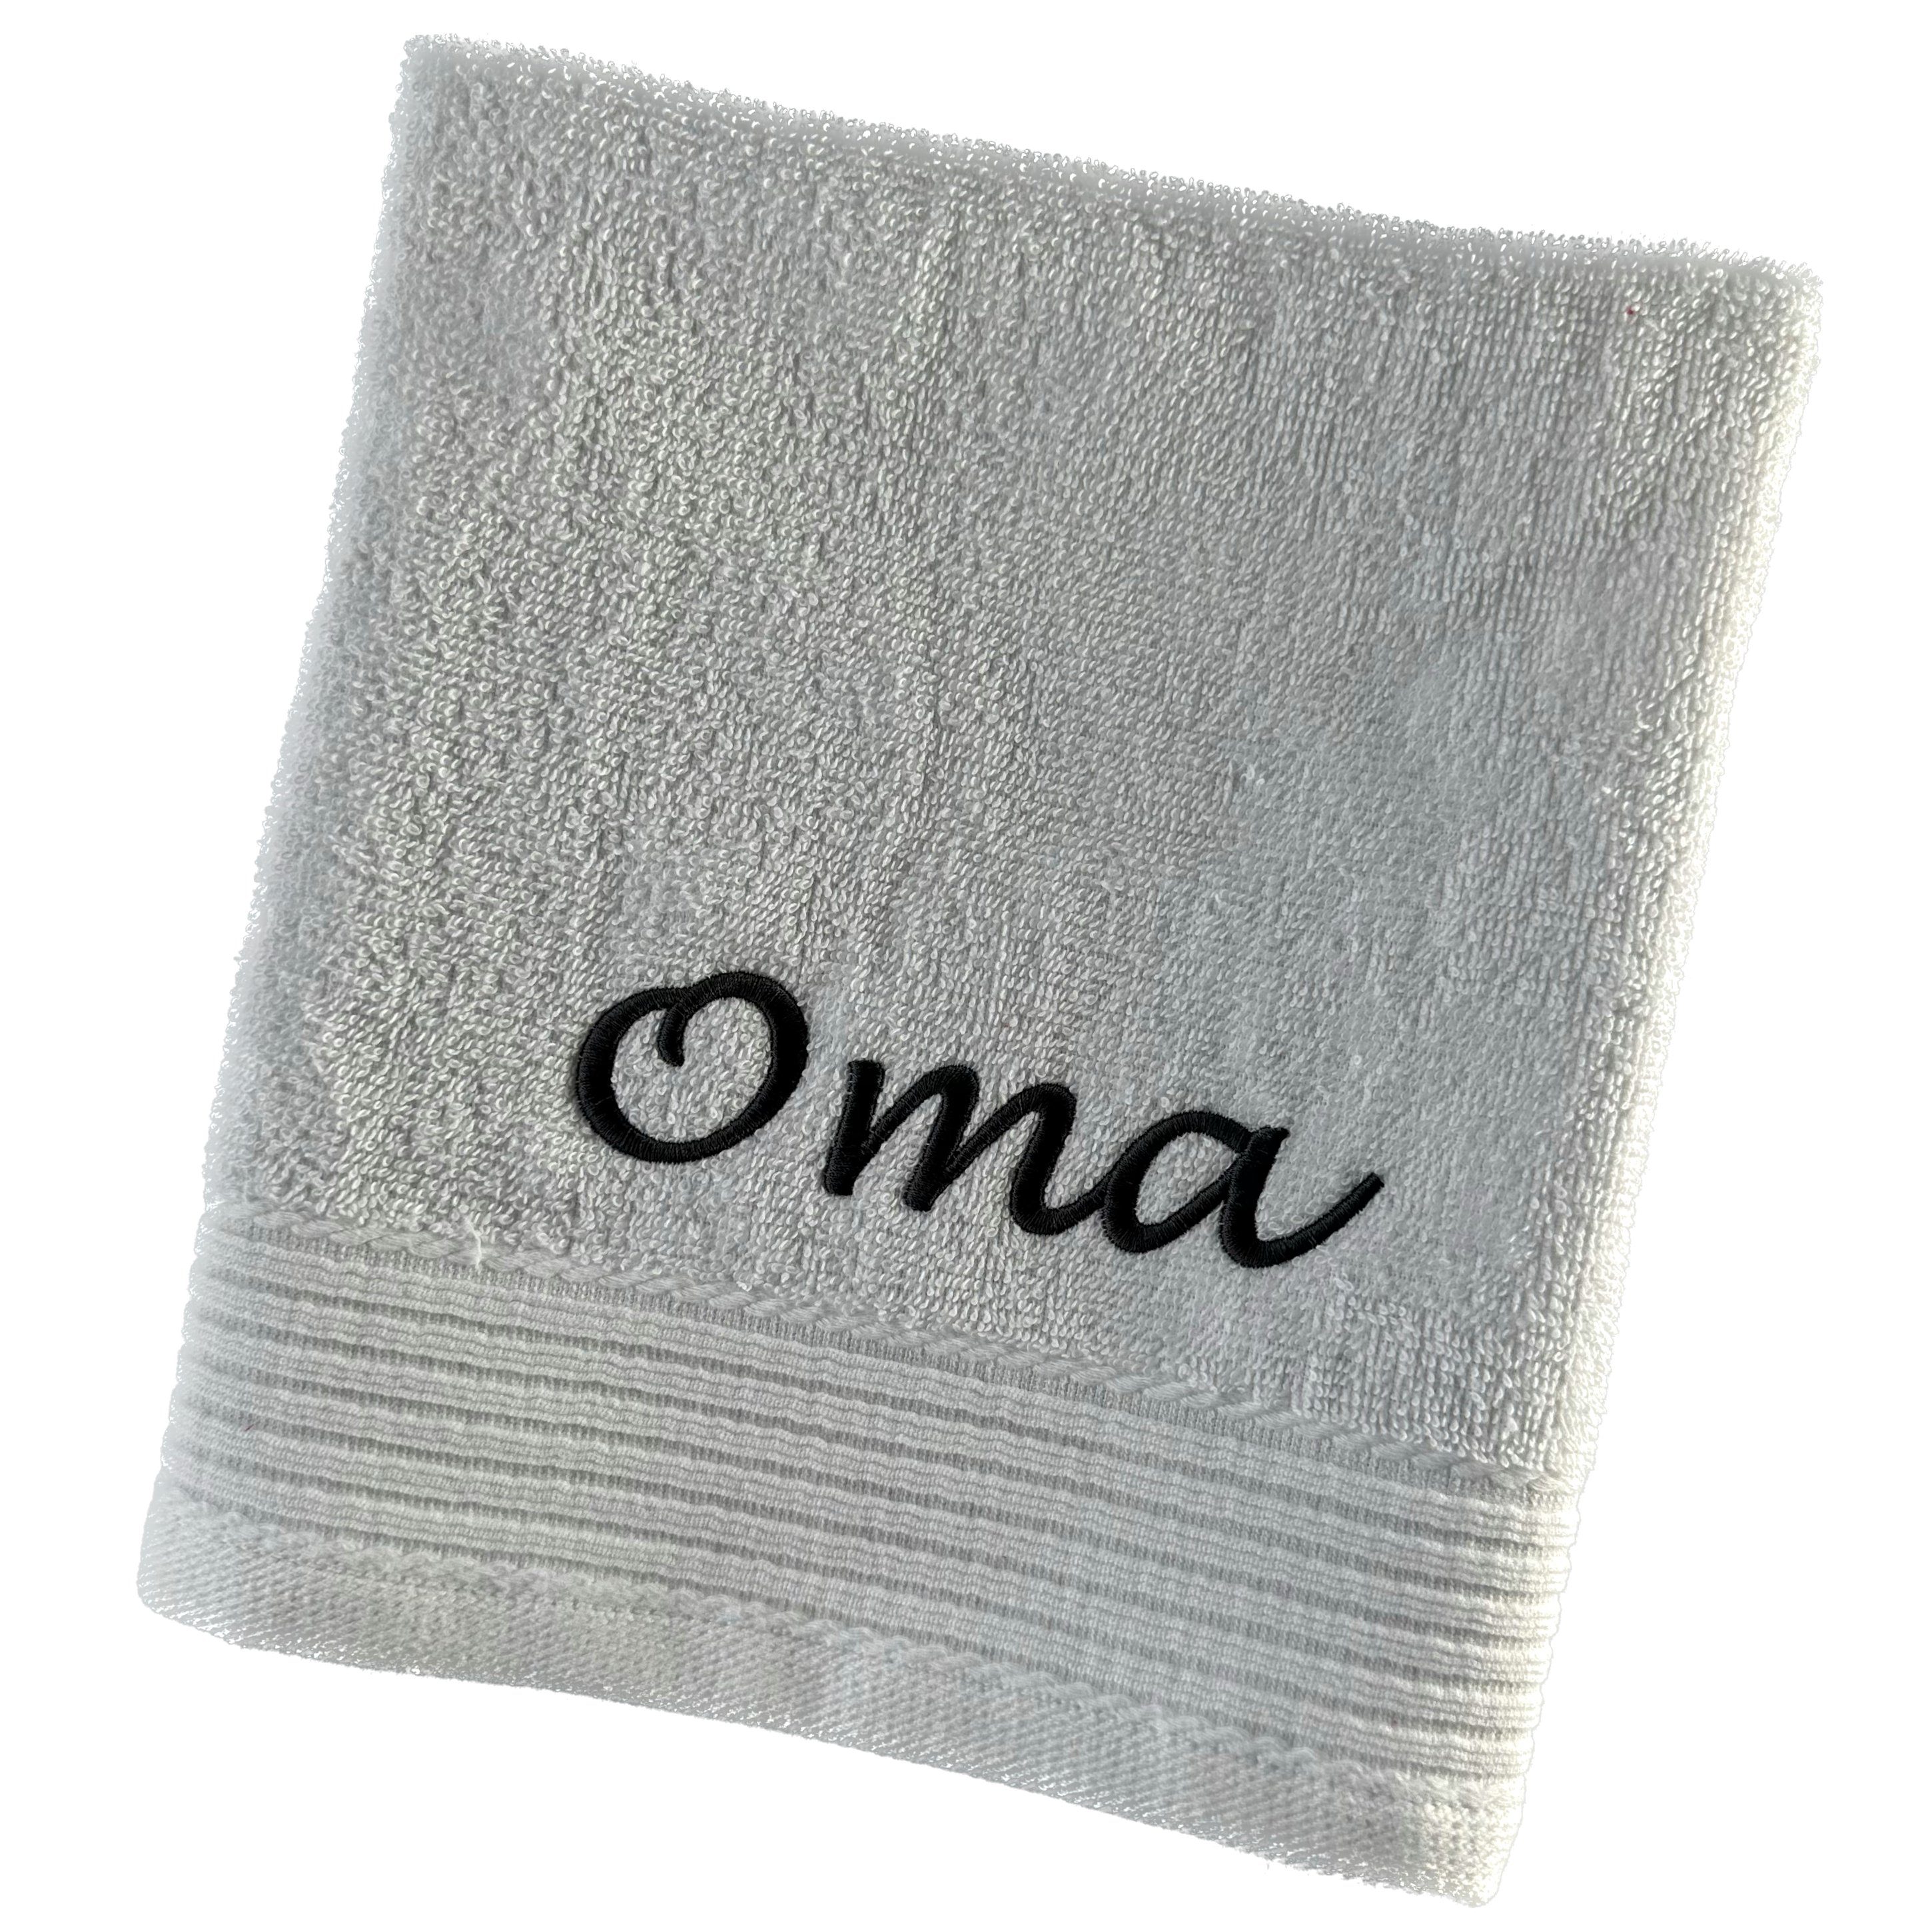 Schnoschi Handtuch Handtuch mit Oma oder Opa bestickt Gästehandtuch Duschtuch Badetuch, hochwertige Bestickung mit Oma oder Opa altrosa